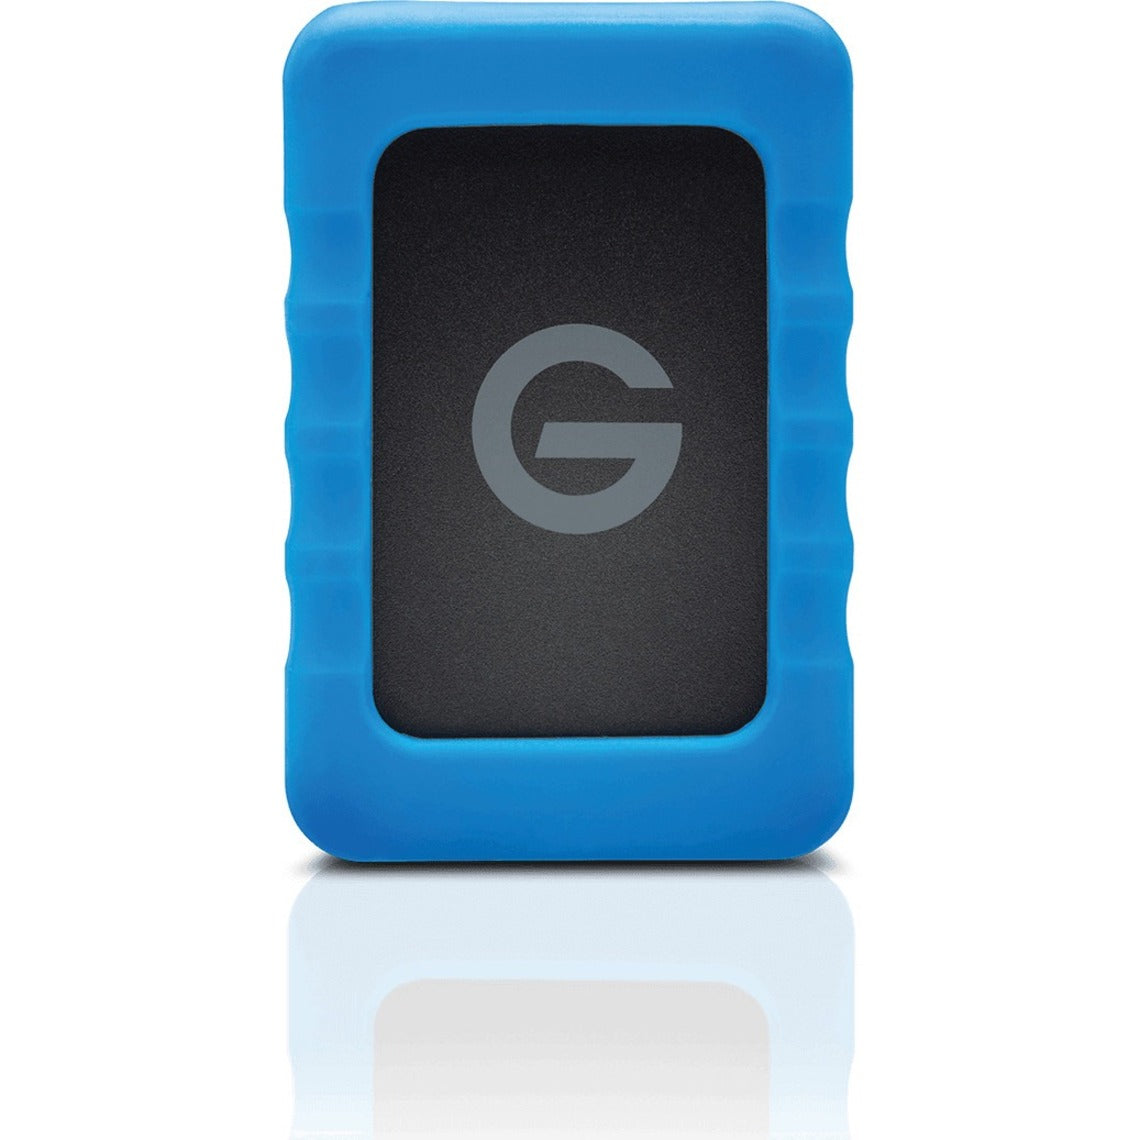 G-Technology G-DRIVE ev RaW 1 TB Portable Hard Drive - 2.5" External - SATA